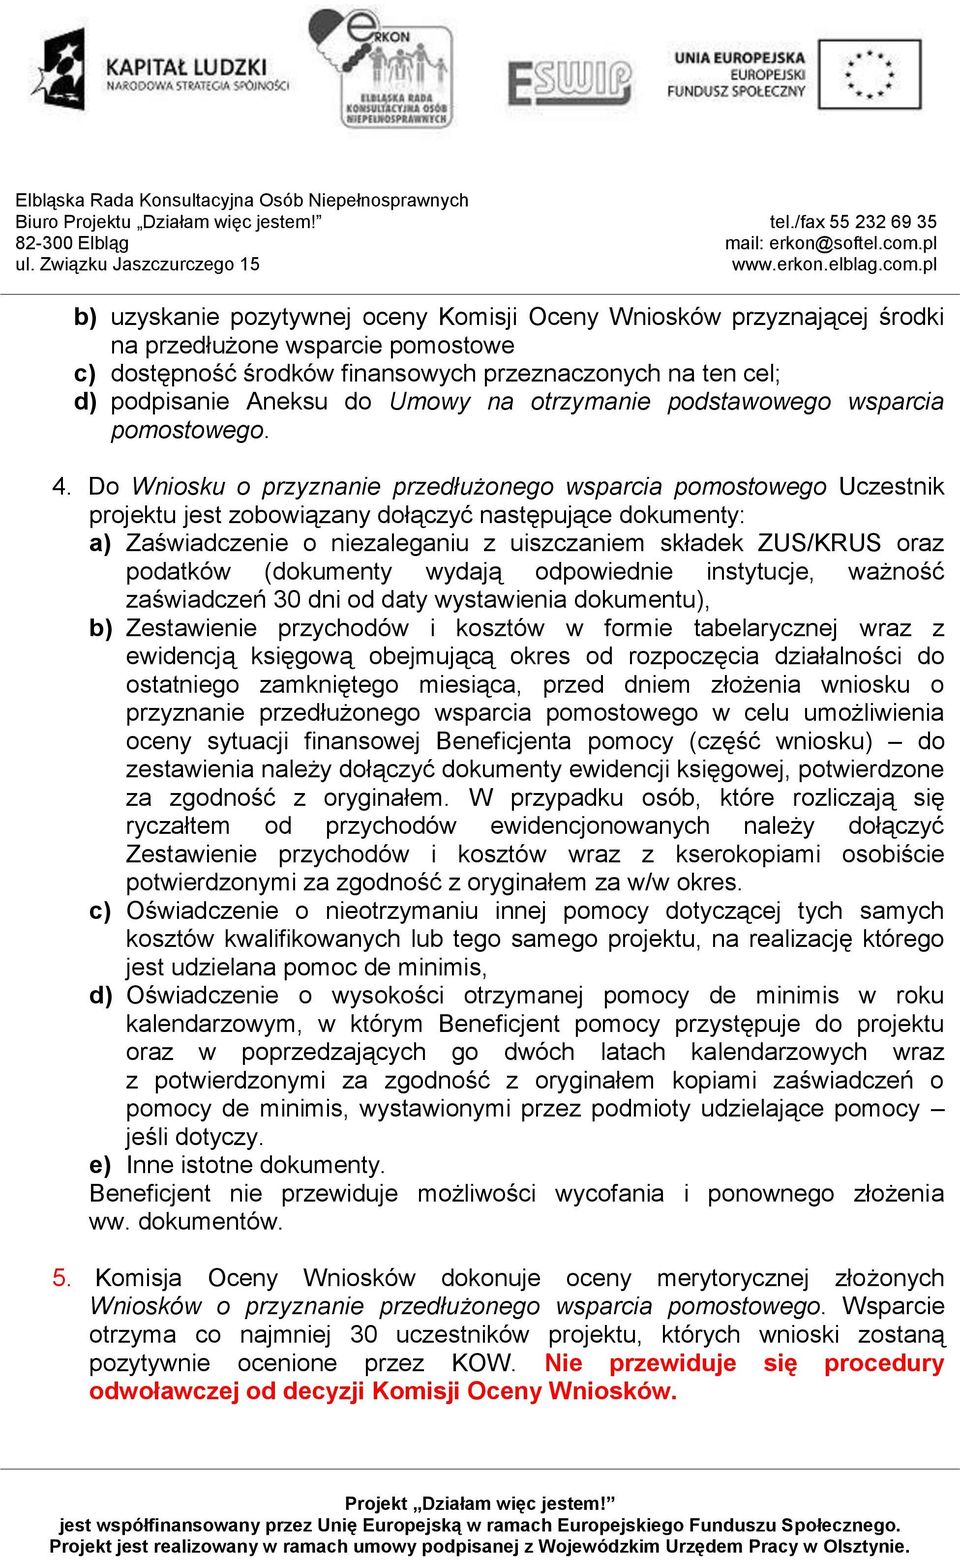 Do Wniosku o przyznanie przedłużonego wsparcia pomostowego Uczestnik projektu jest zobowiązany dołączyć następujące dokumenty: a) Zaświadczenie o niezaleganiu z uiszczaniem składek ZUS/KRUS oraz